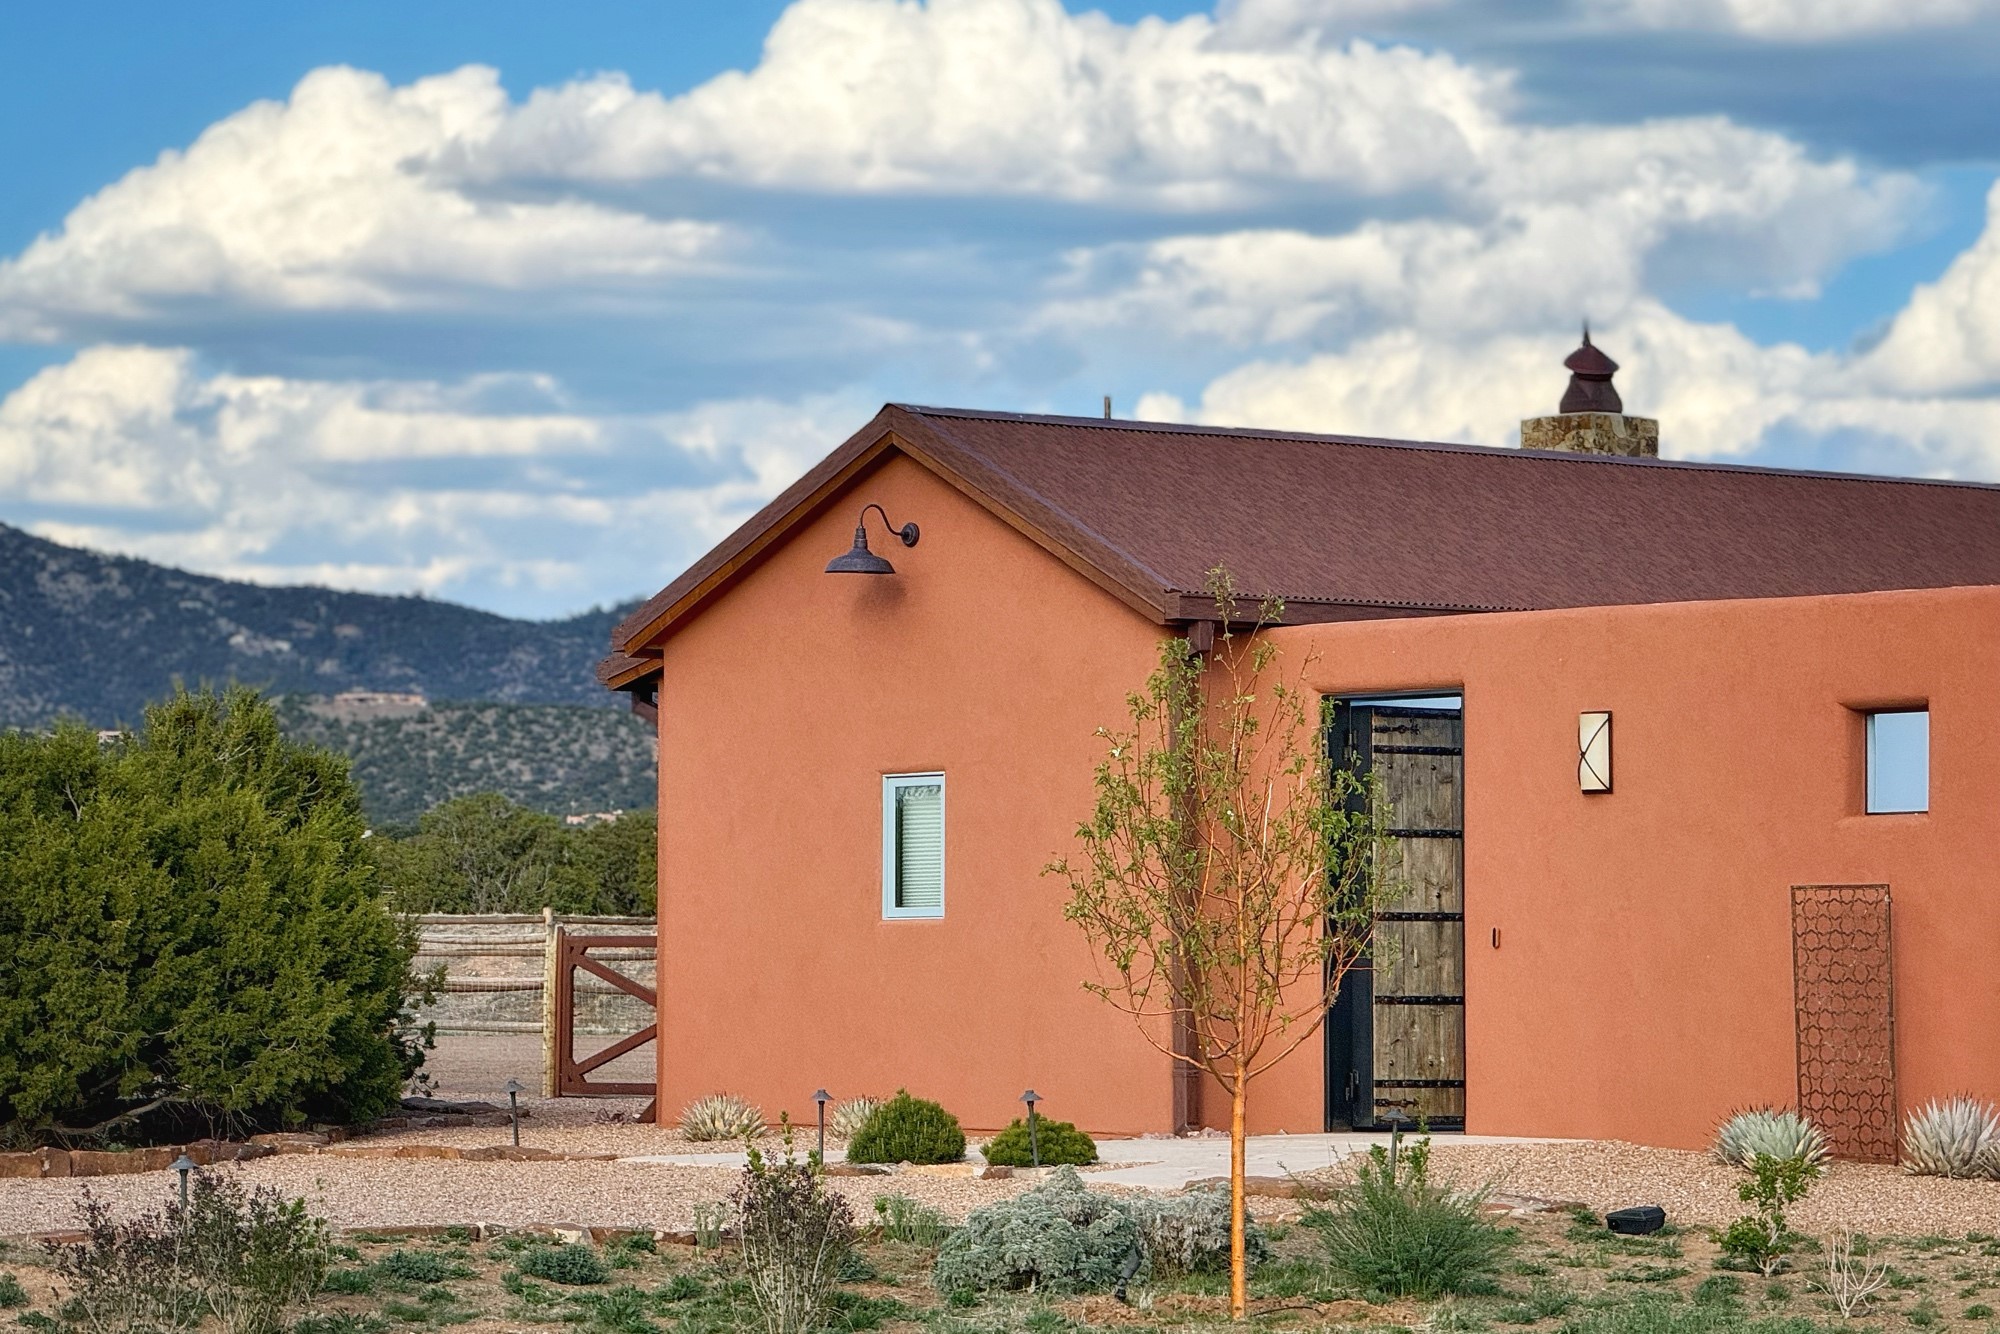 86 Droege Road, Santa Fe, New Mexico 87508, 5 Bedrooms Bedrooms, ,4 BathroomsBathrooms,Residential,For Sale,86 Droege Road,202401516